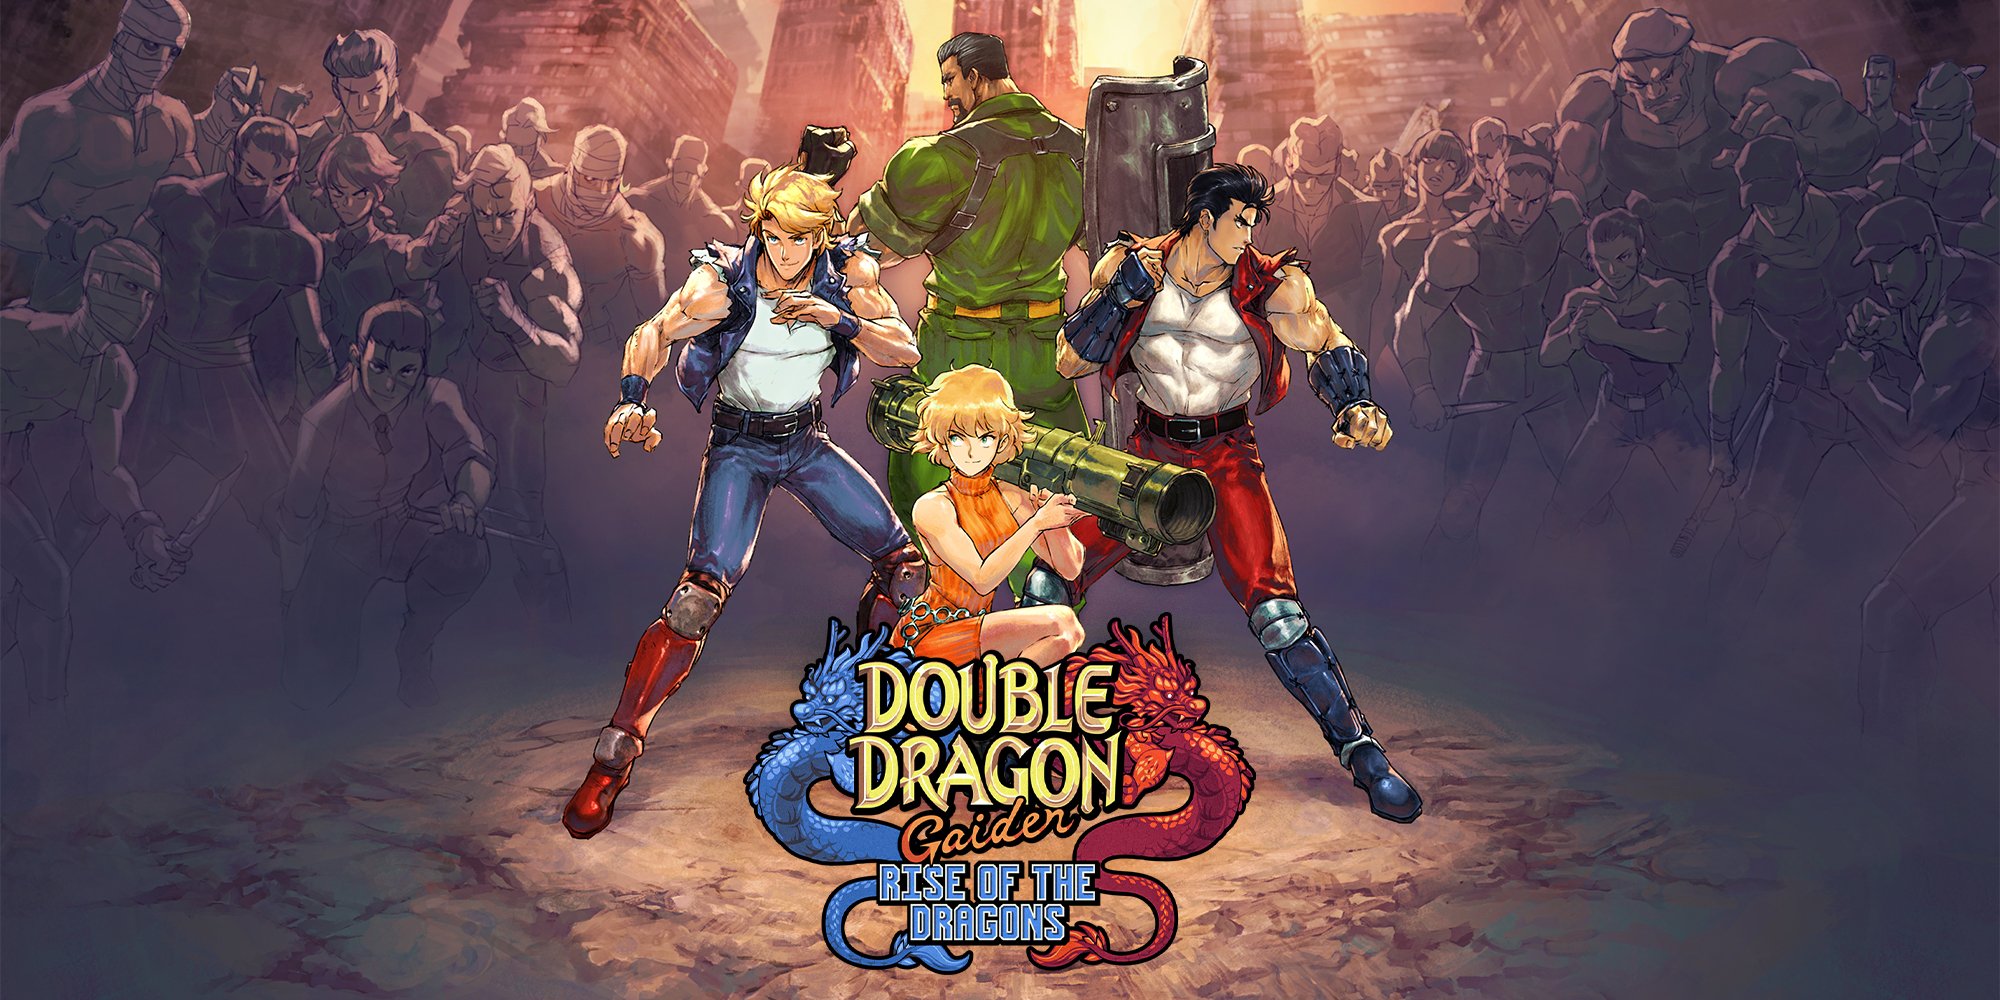 Recensione di Double Dragon Gaiden: L'ascesa del drago